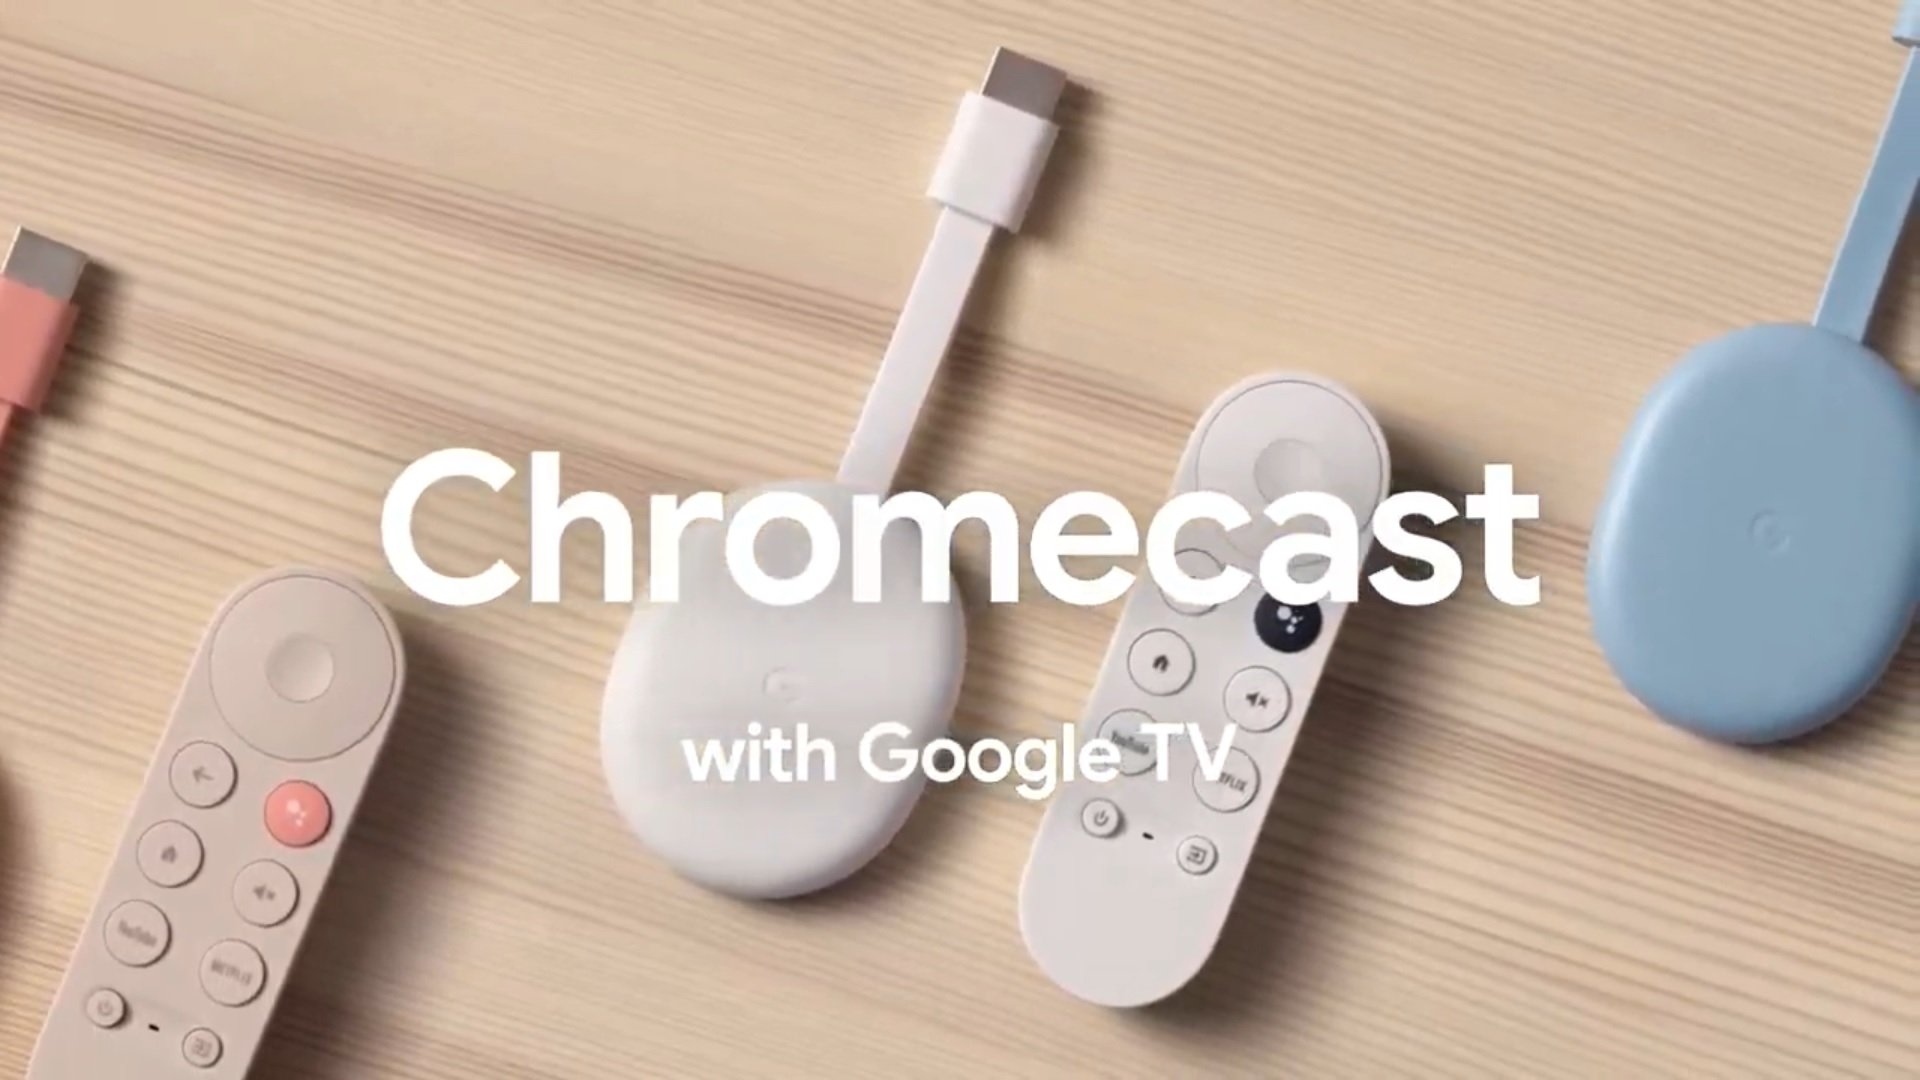 Google TV - Das neueste Produkt von Google, das eine verbesserte Benutzeroberfläche und zahlreiche Streaming-Optionen bietet.
Chromecast Ultra - Wenn du ein Google-Fan bist, bietet diese Chromecast-Alternative 4K-Streaming und schnelle Leistung.